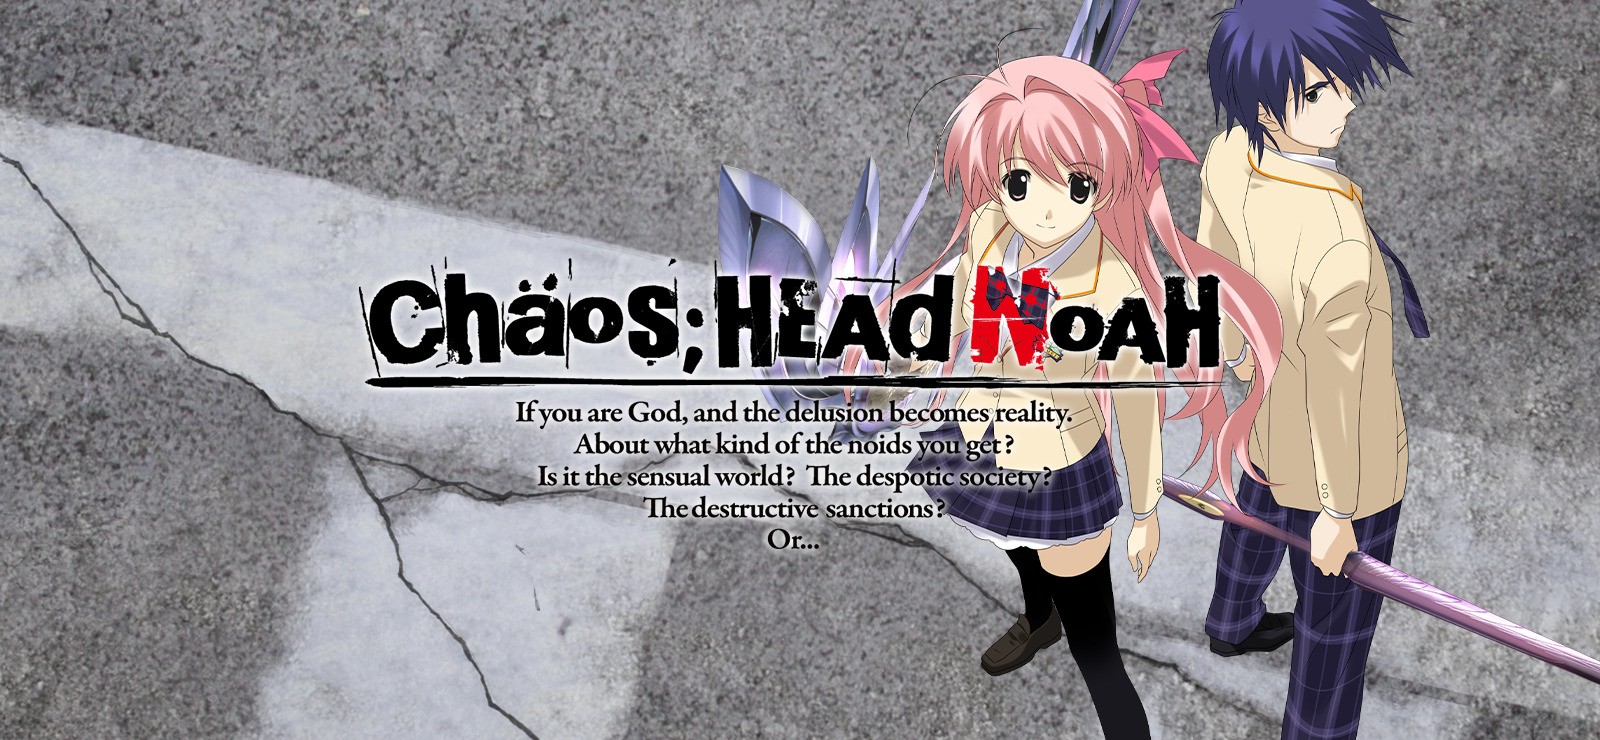 Chaos head noah steam фото 9